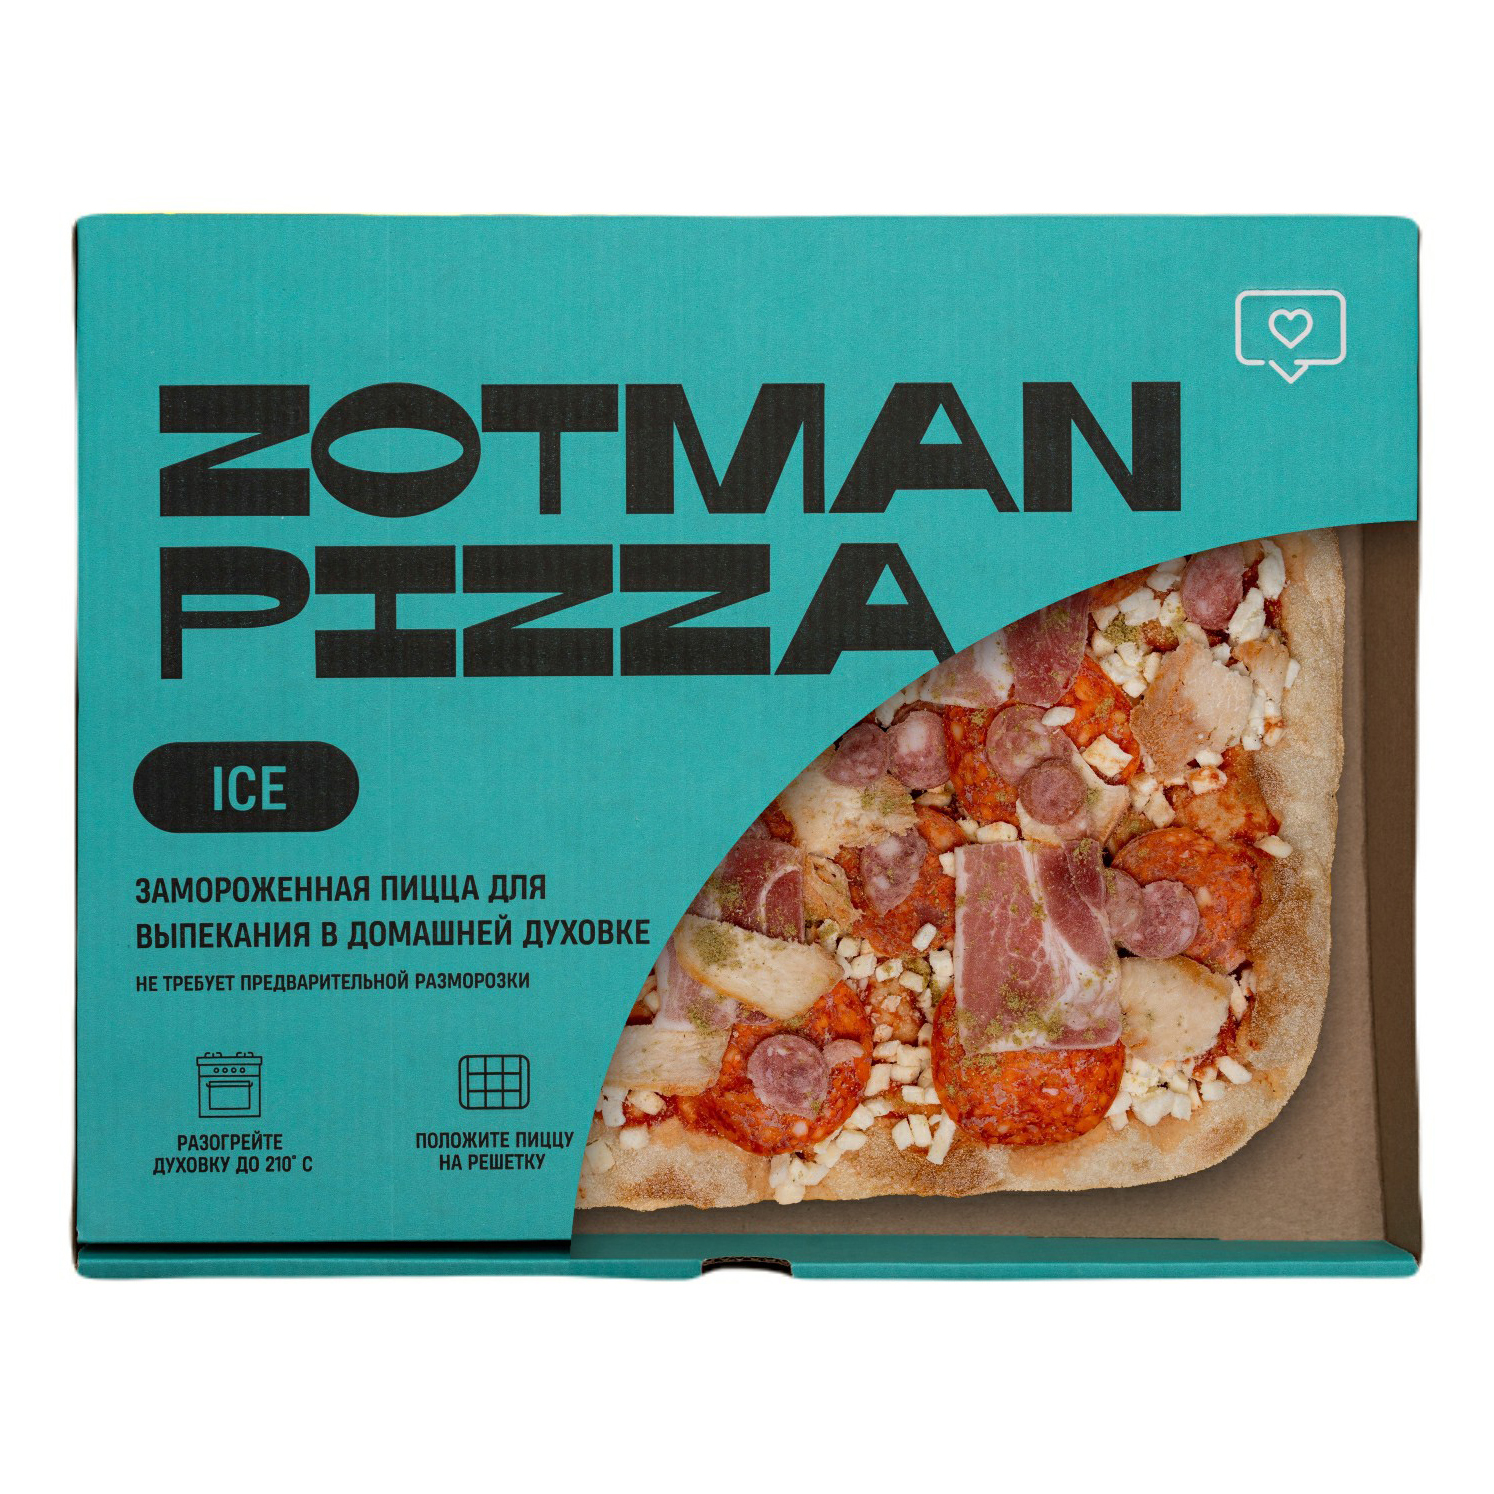 Замороженная пицца Рестория. Пицца Zotman замороженная. Замороженная пицца папа Наполи. Пицца замороженная отзывы.